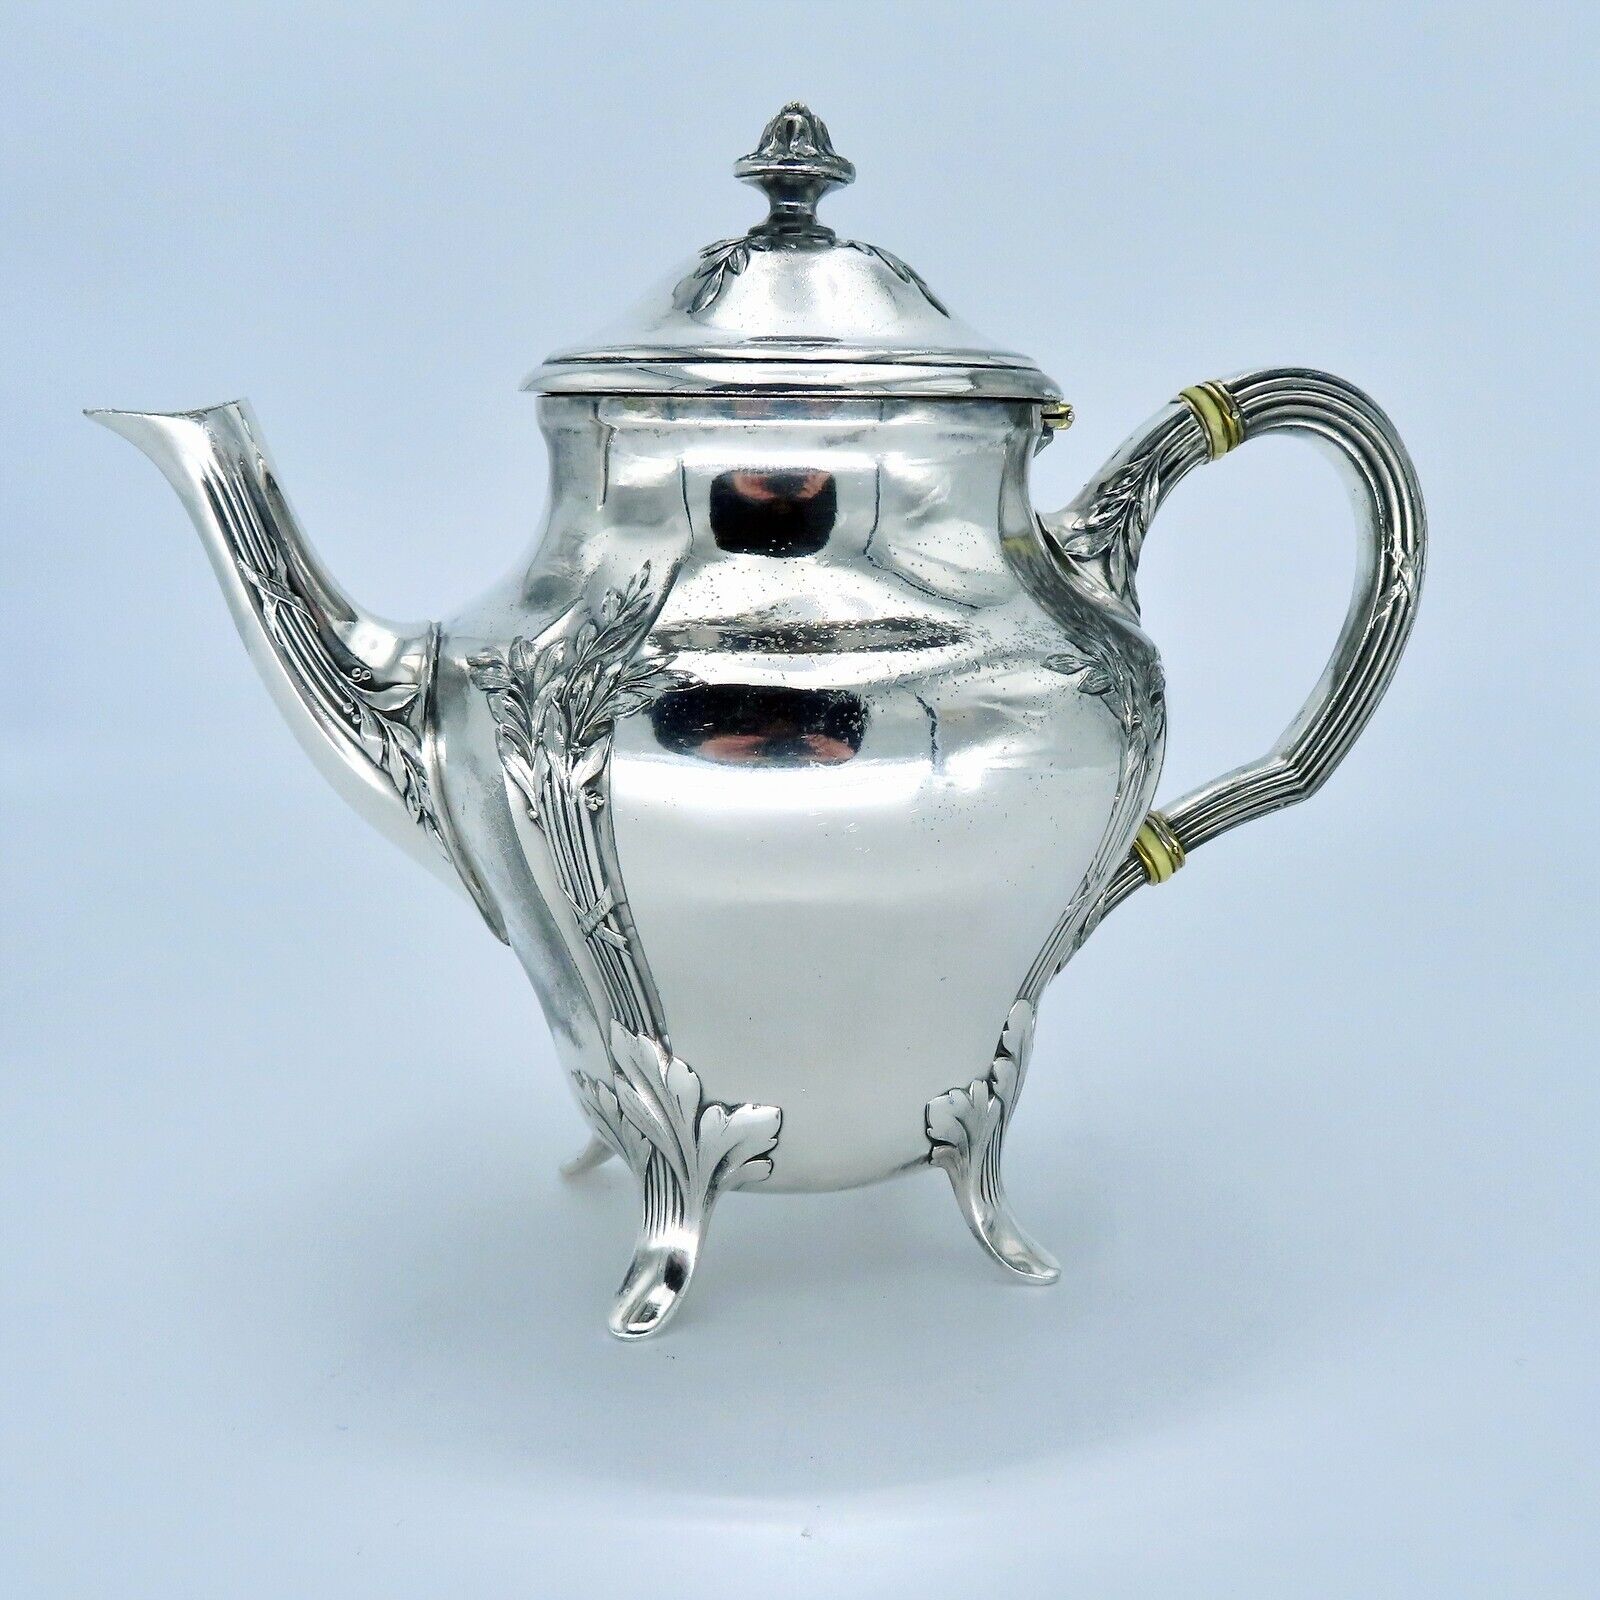 Чайник Christofle посеребренный чай Gallia антикварный французский модерн кон 19 в